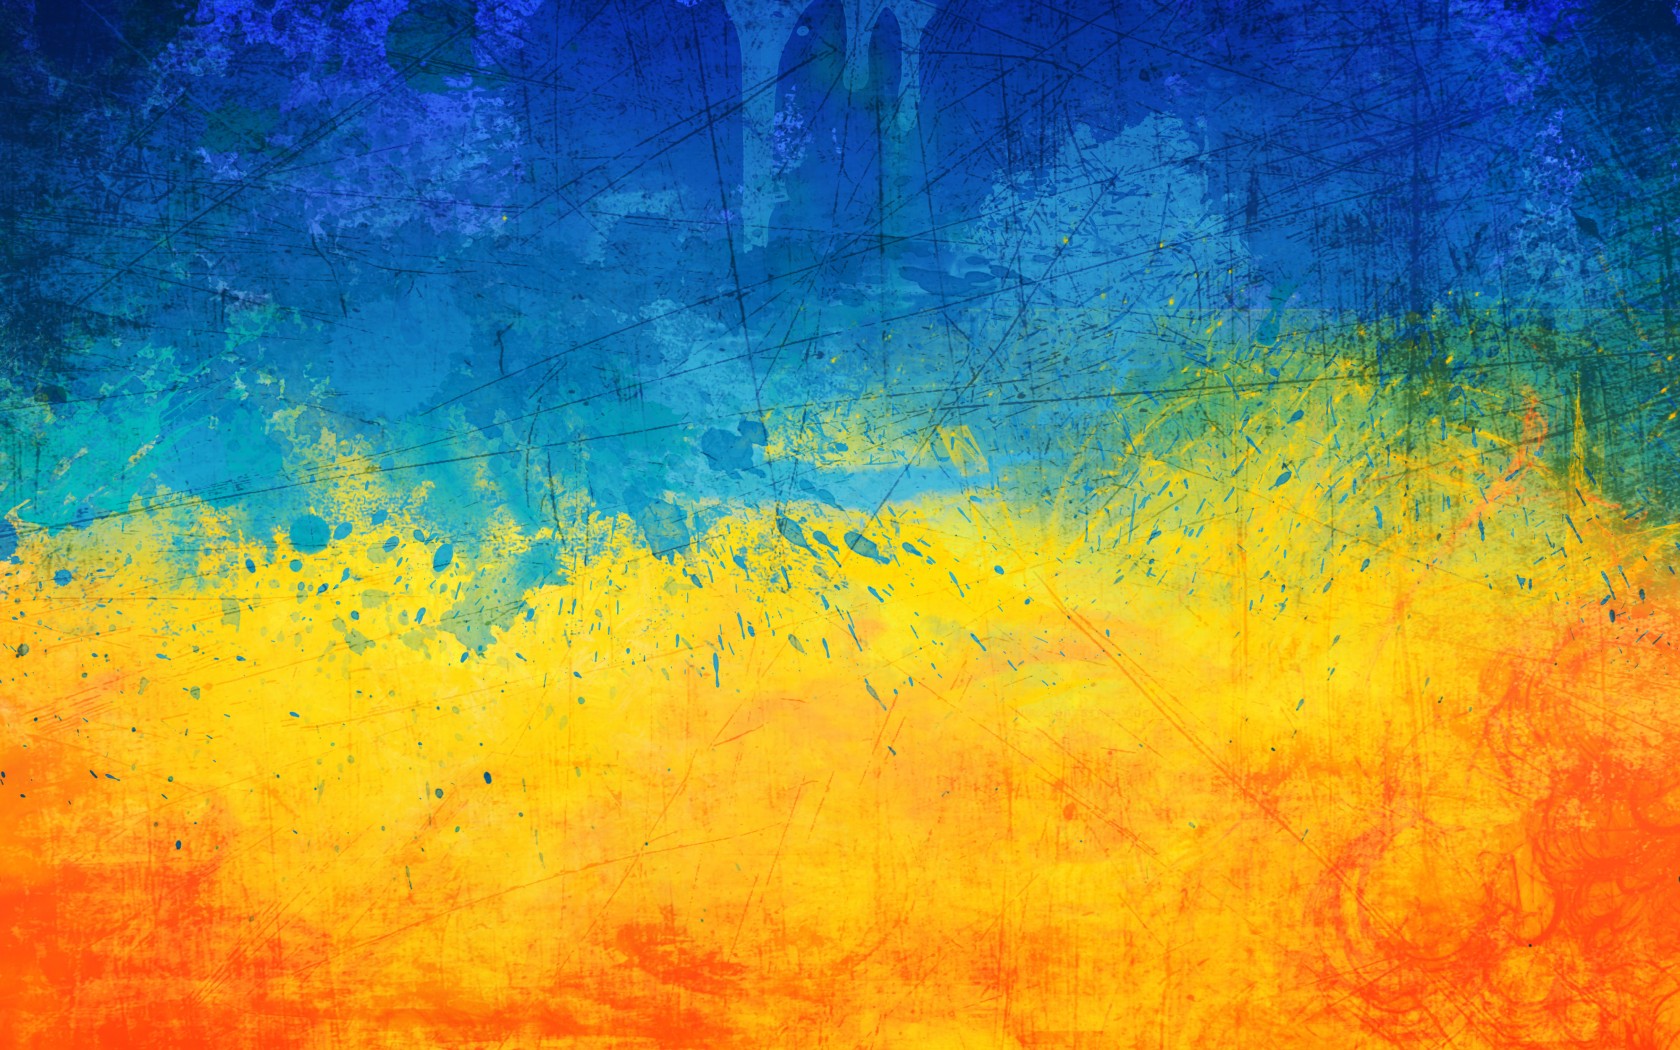 Популярные заставки и фоны Флаг Украины на компьютер